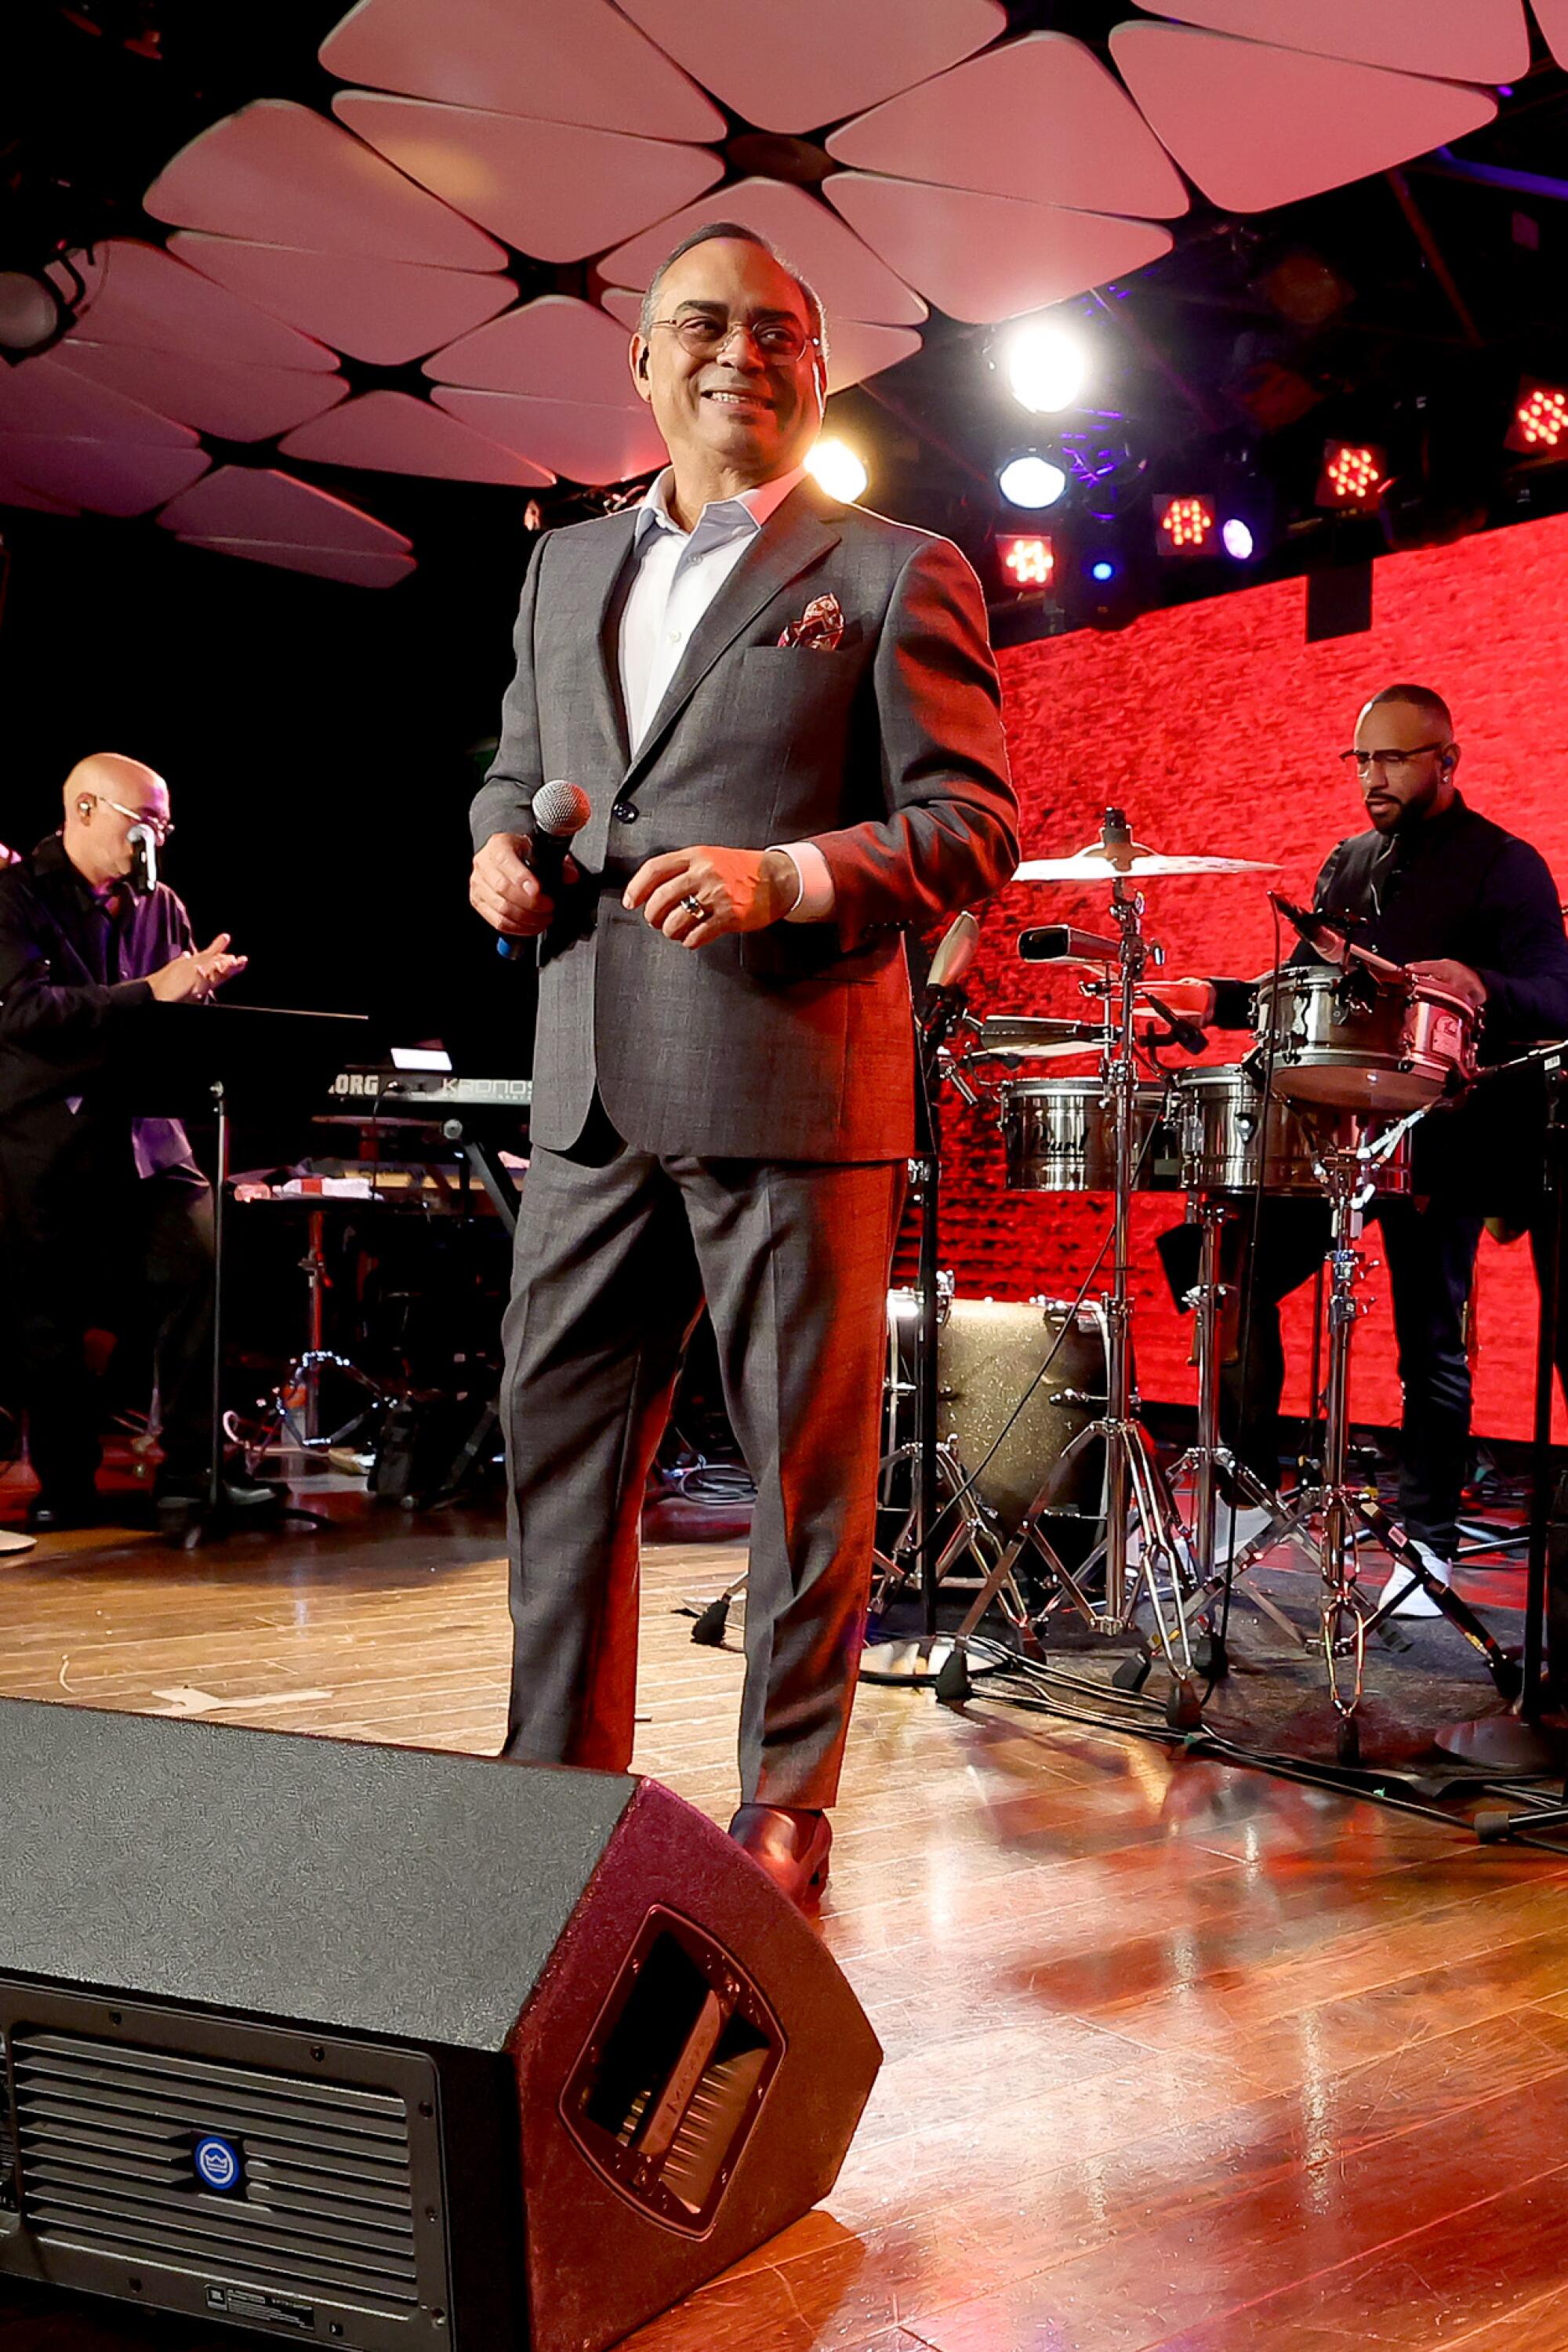 Gilberto Santa Rosa complació a los presentes a ritmo de salsa y bolero. "Que alguien me diga" si le gustó o no su actuación.